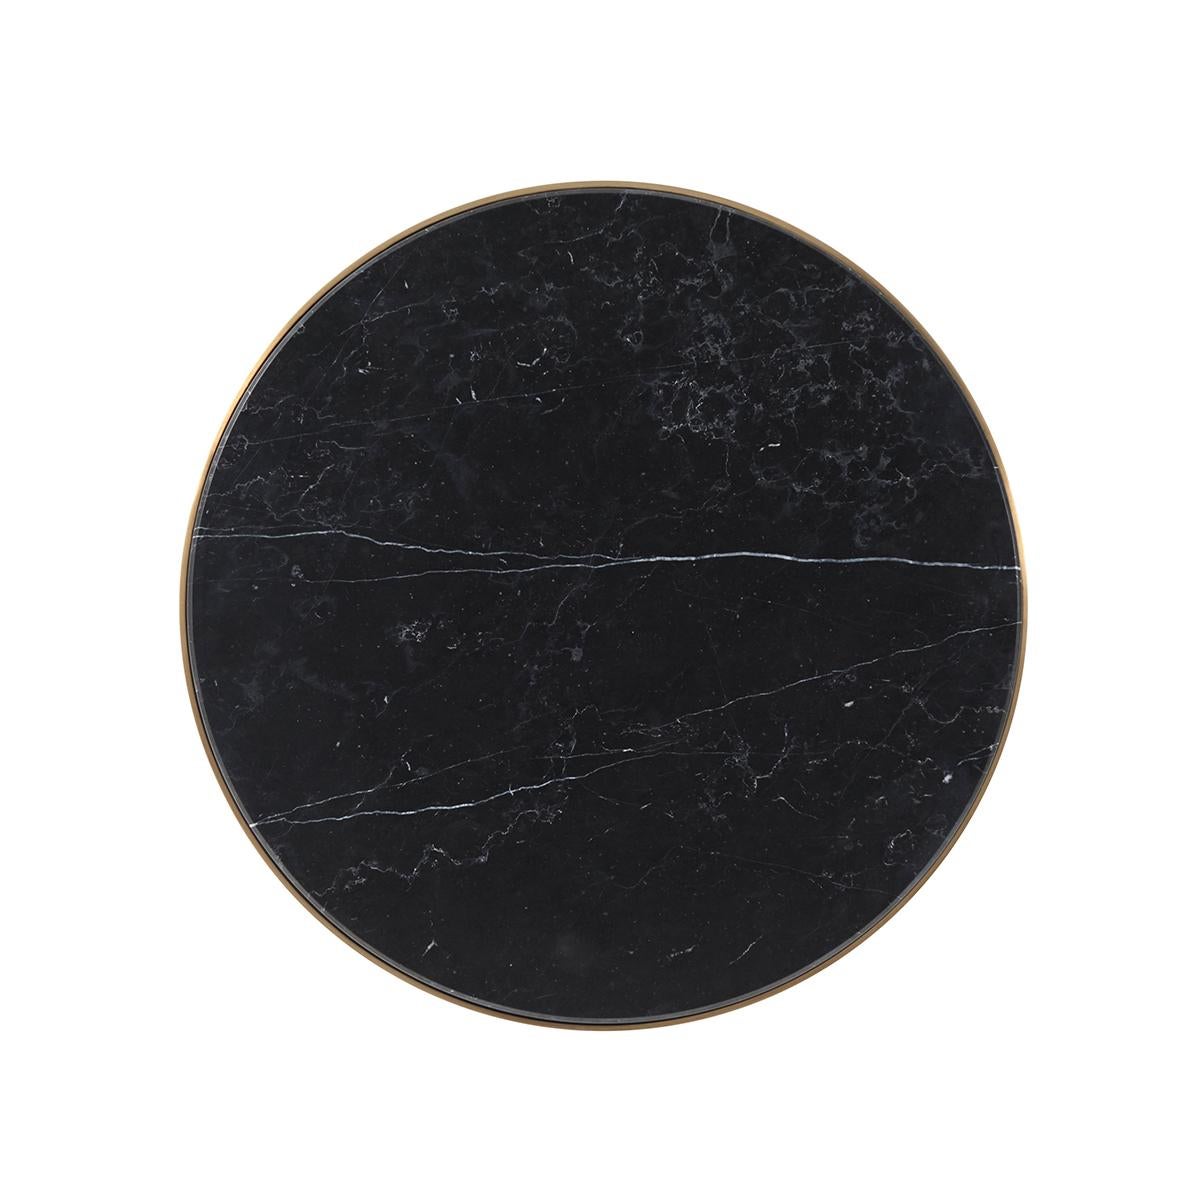 Mit einer runden, schwarzen Marmorplatte auf einem gebürsteten, messingfarbenen Metallsockel mit spitz zulaufenden Beinen.

Abmessungen: 19,75